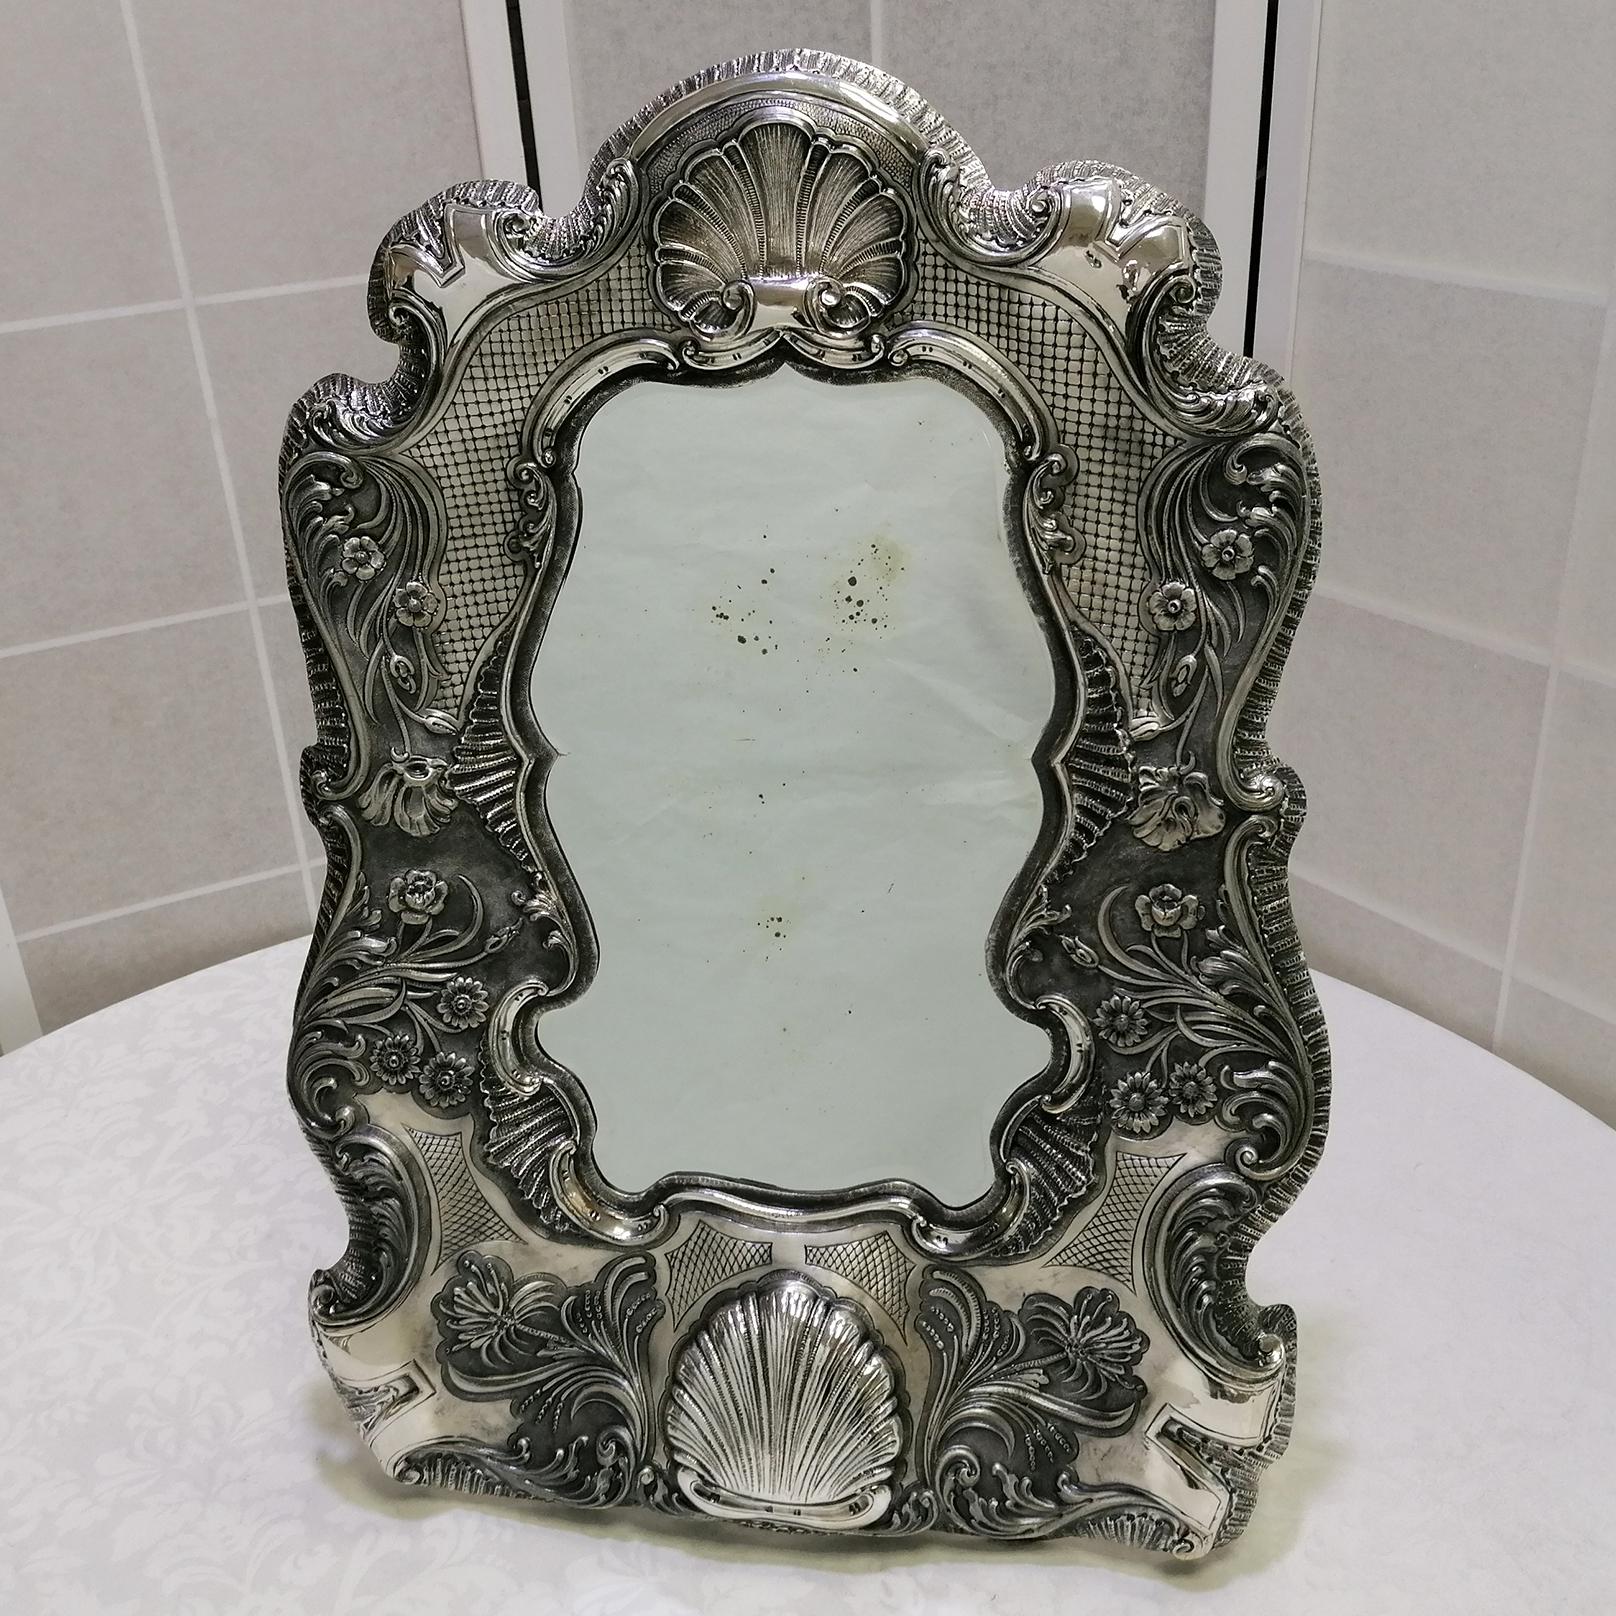 Beeindruckender Barock/Rokoko Wand- und Tischspiegel aus 800er Silber.
Ausgehend von einem antiken Spiegel, der dann in den Spiegel eingesetzt wurde, wurde dieses Meisterwerk komplett von Hand aus einer 800er Silberplatte gefertigt. Anschließend